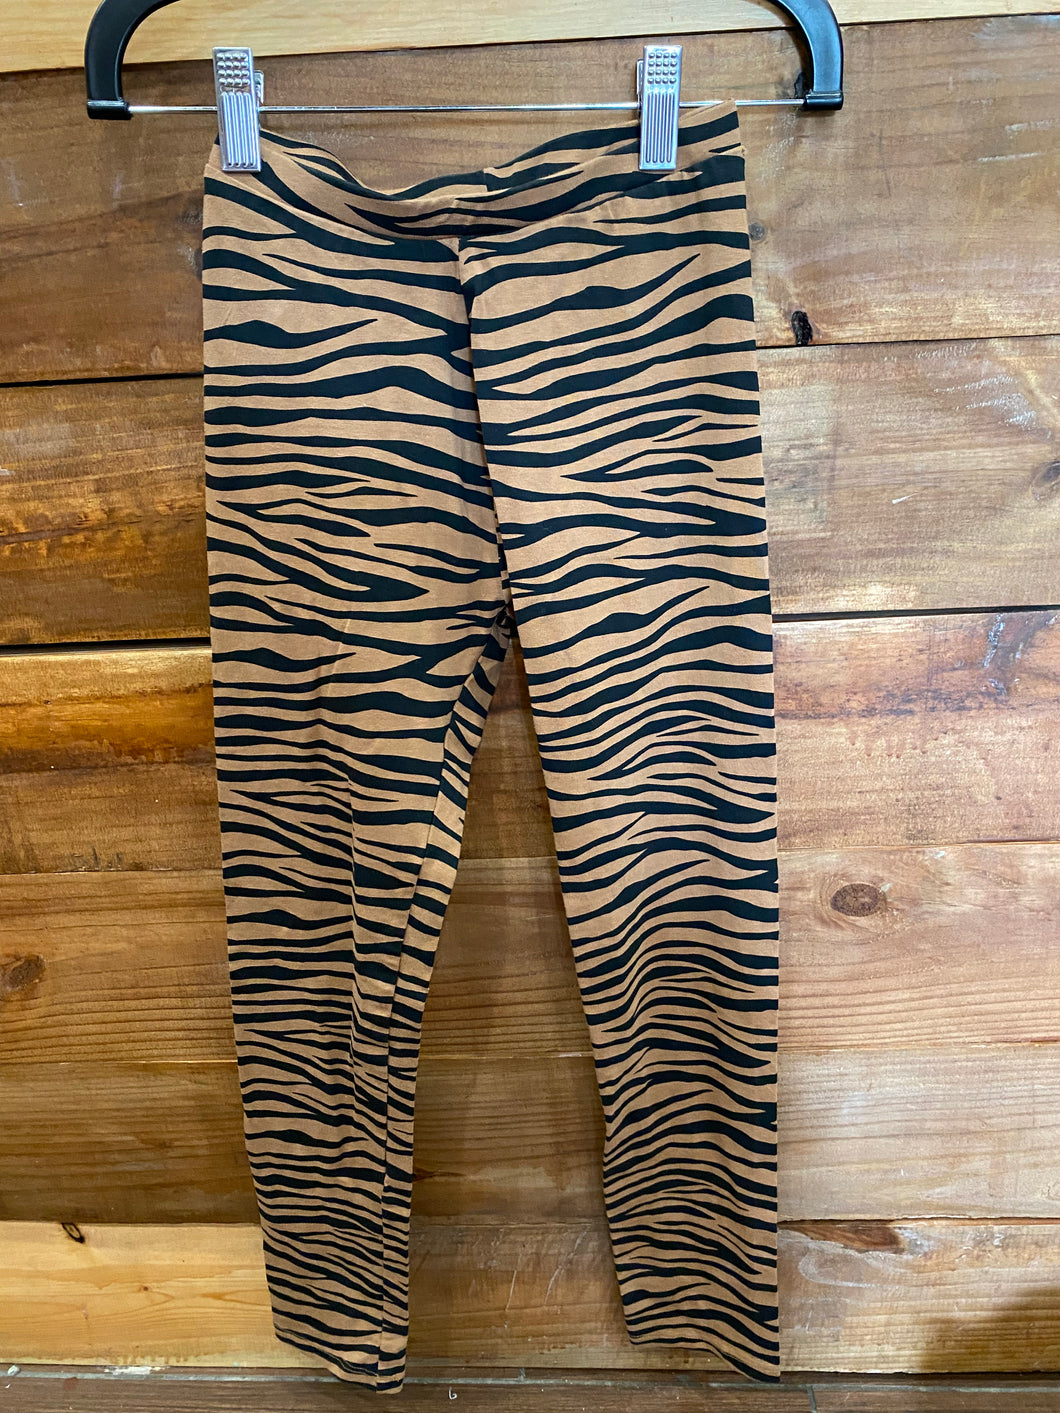 Zara Tiger Leggings Size 10